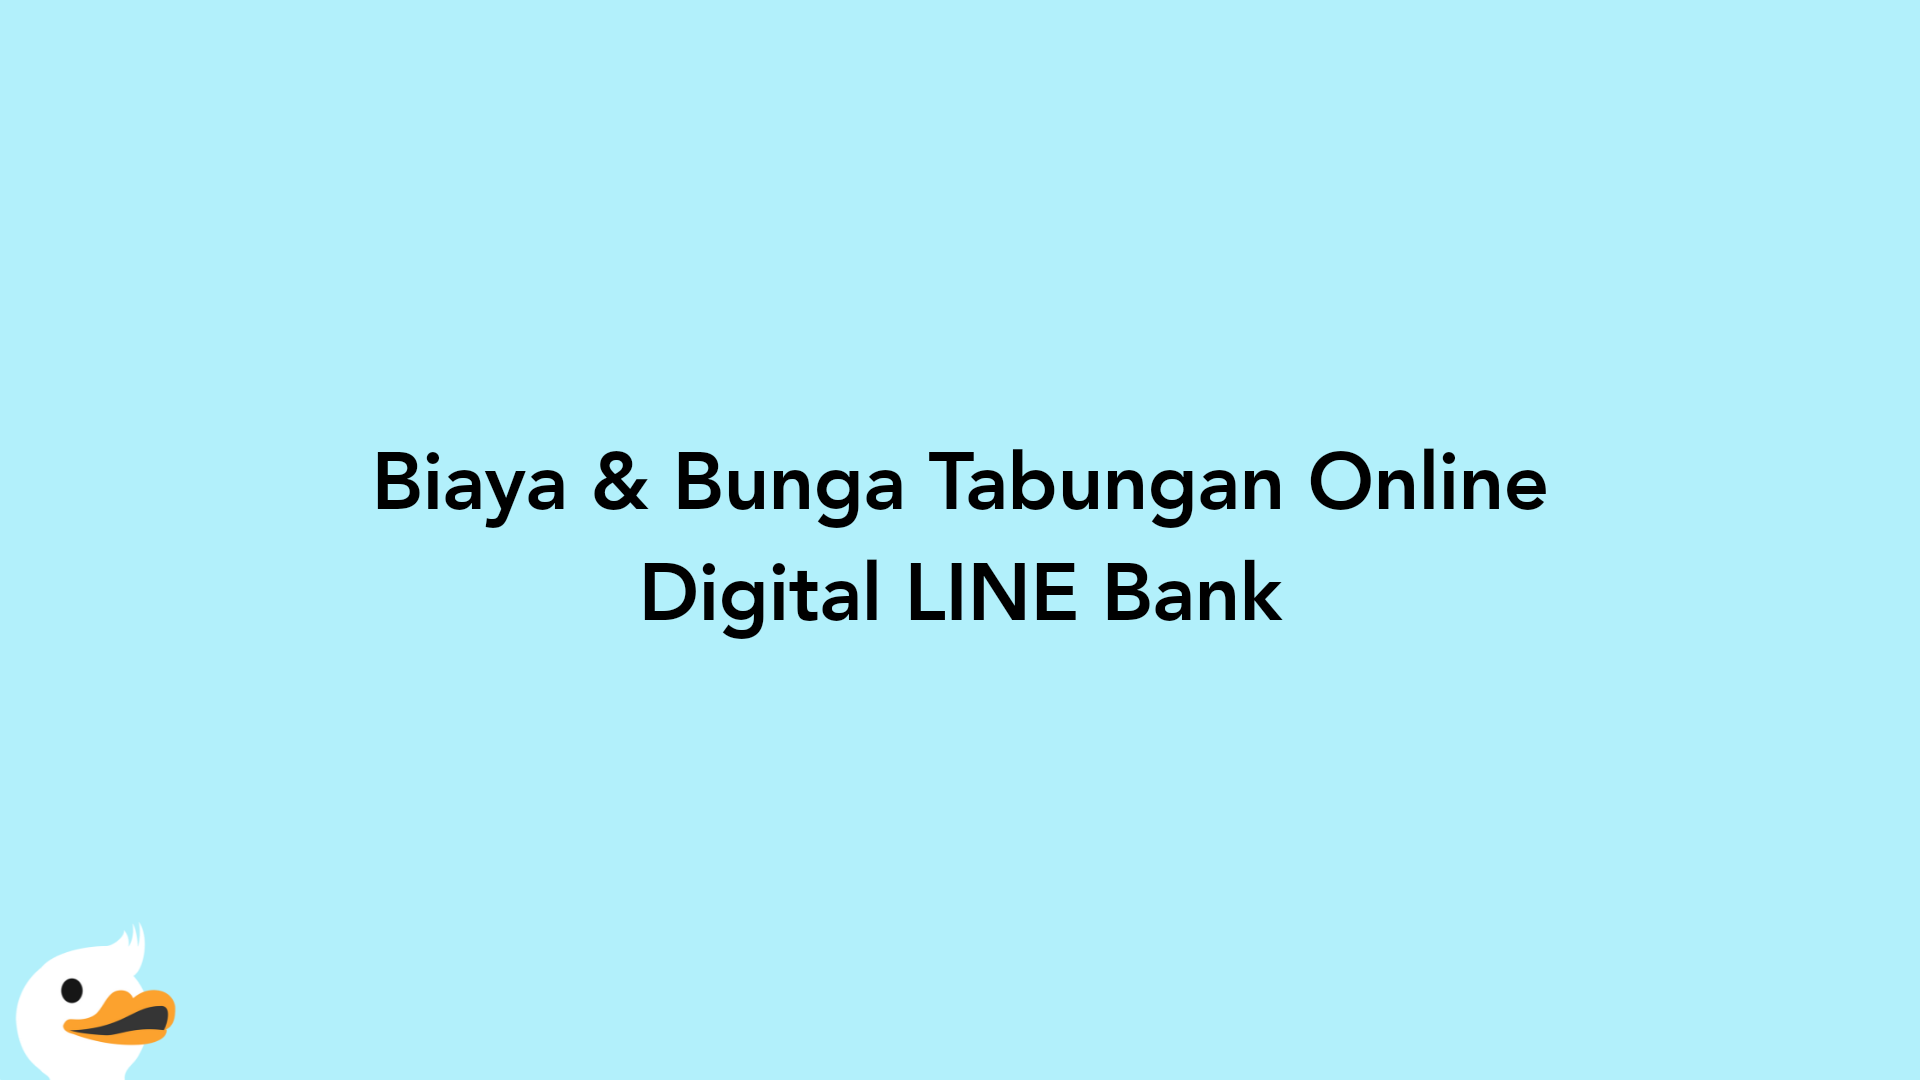 Biaya & Bunga Tabungan Online Digital LINE Bank